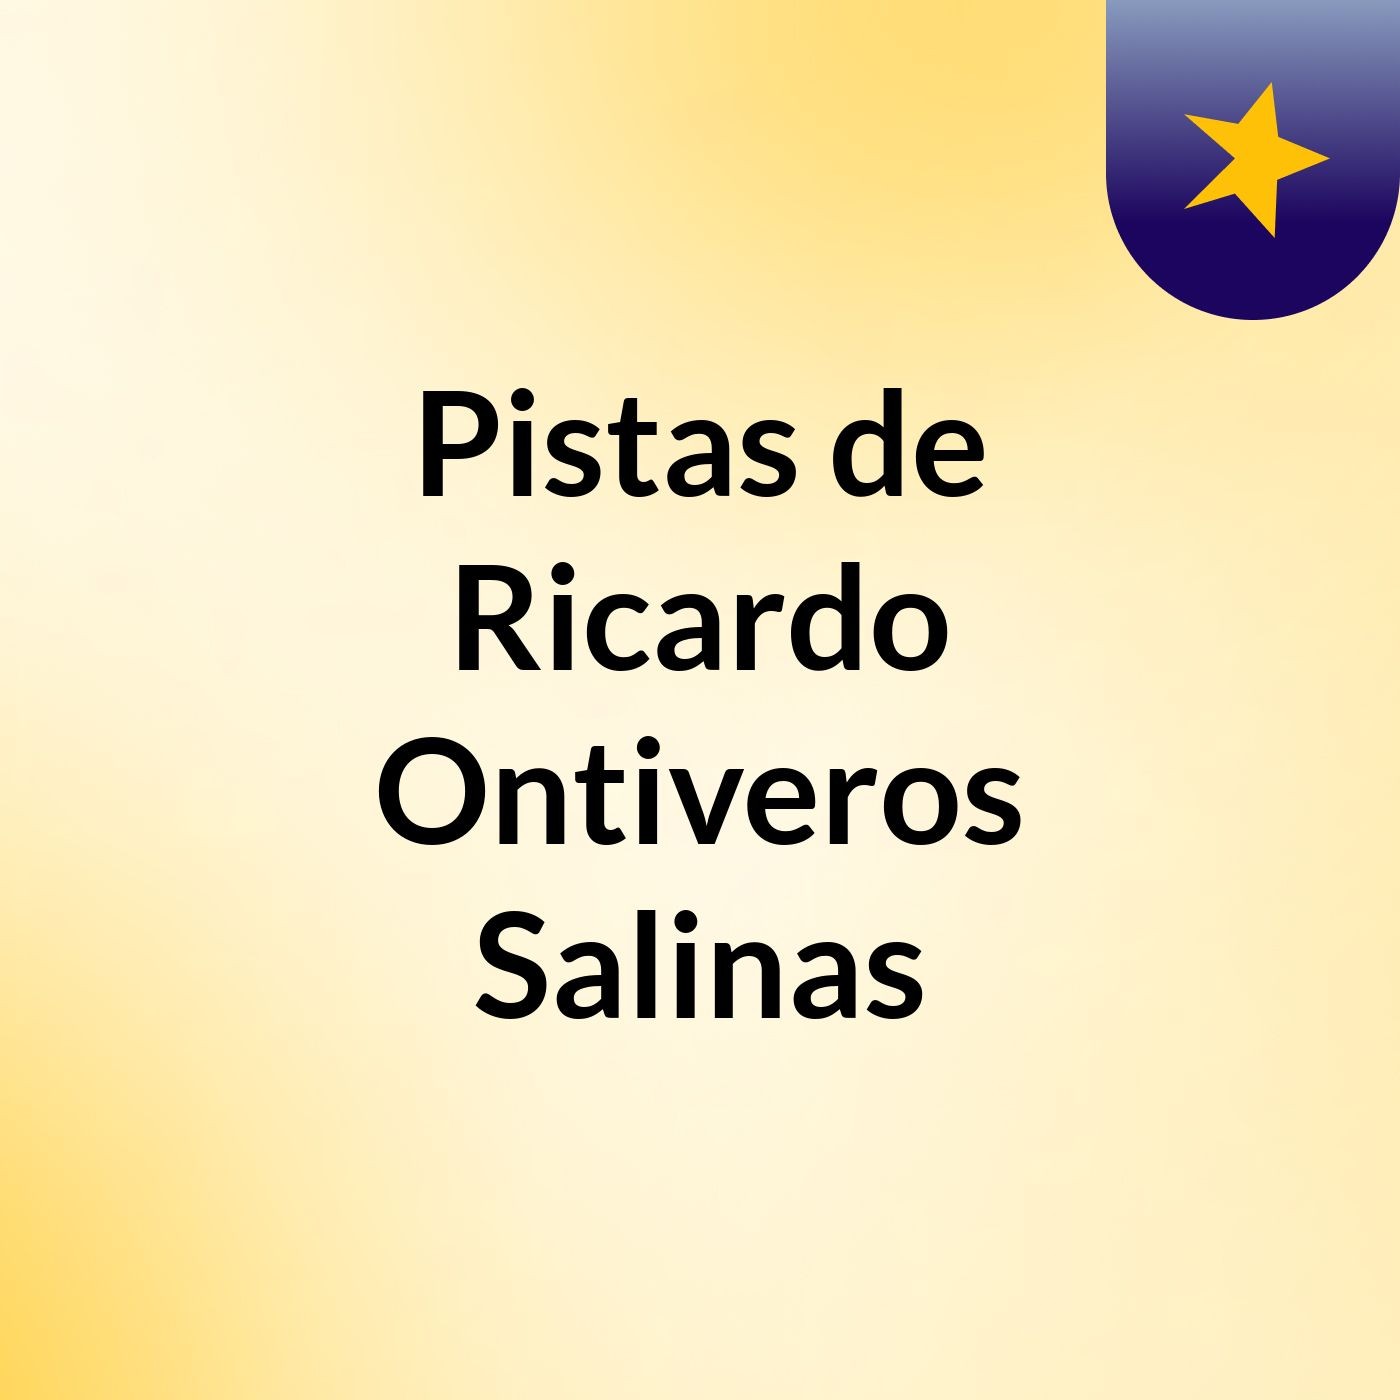 Pistas de Ricardo Ontiveros Salinas